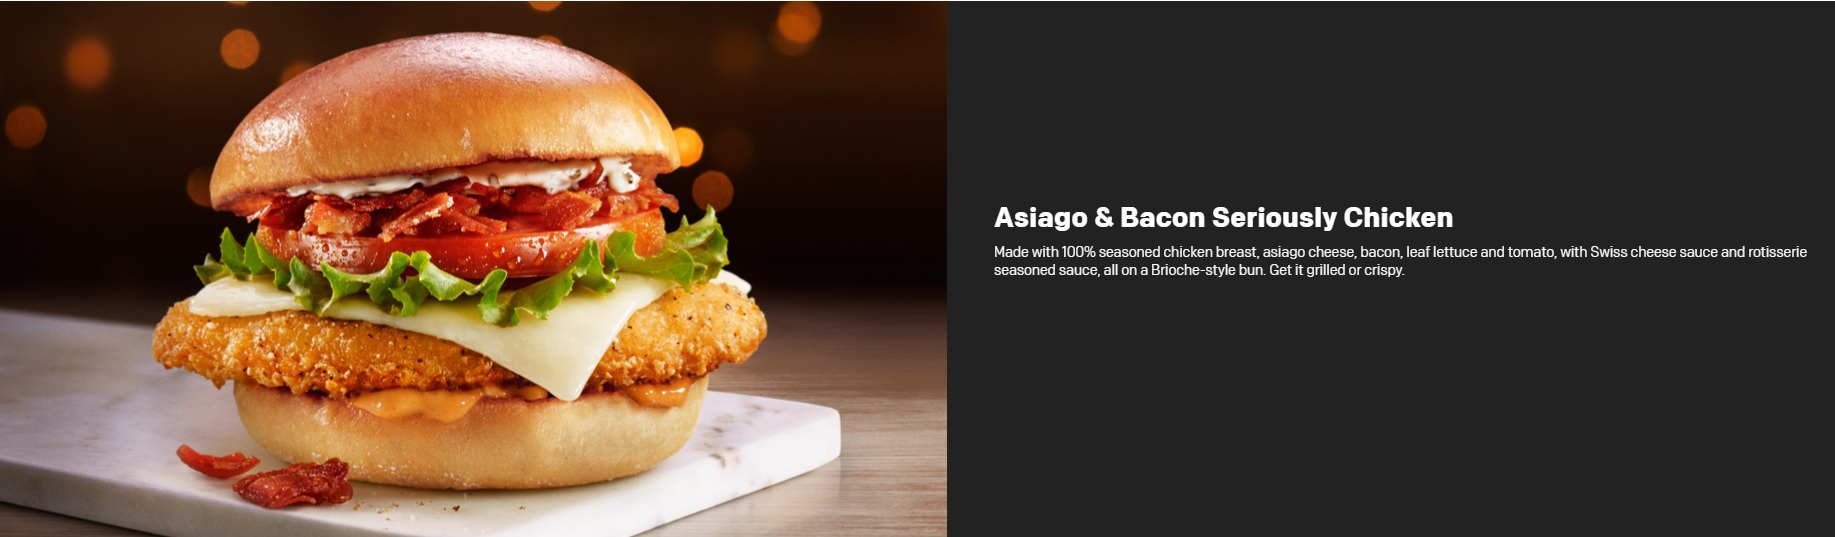 McDonald’s Seriously Festive Menu - Asiago & Bacon Seriously Chicken